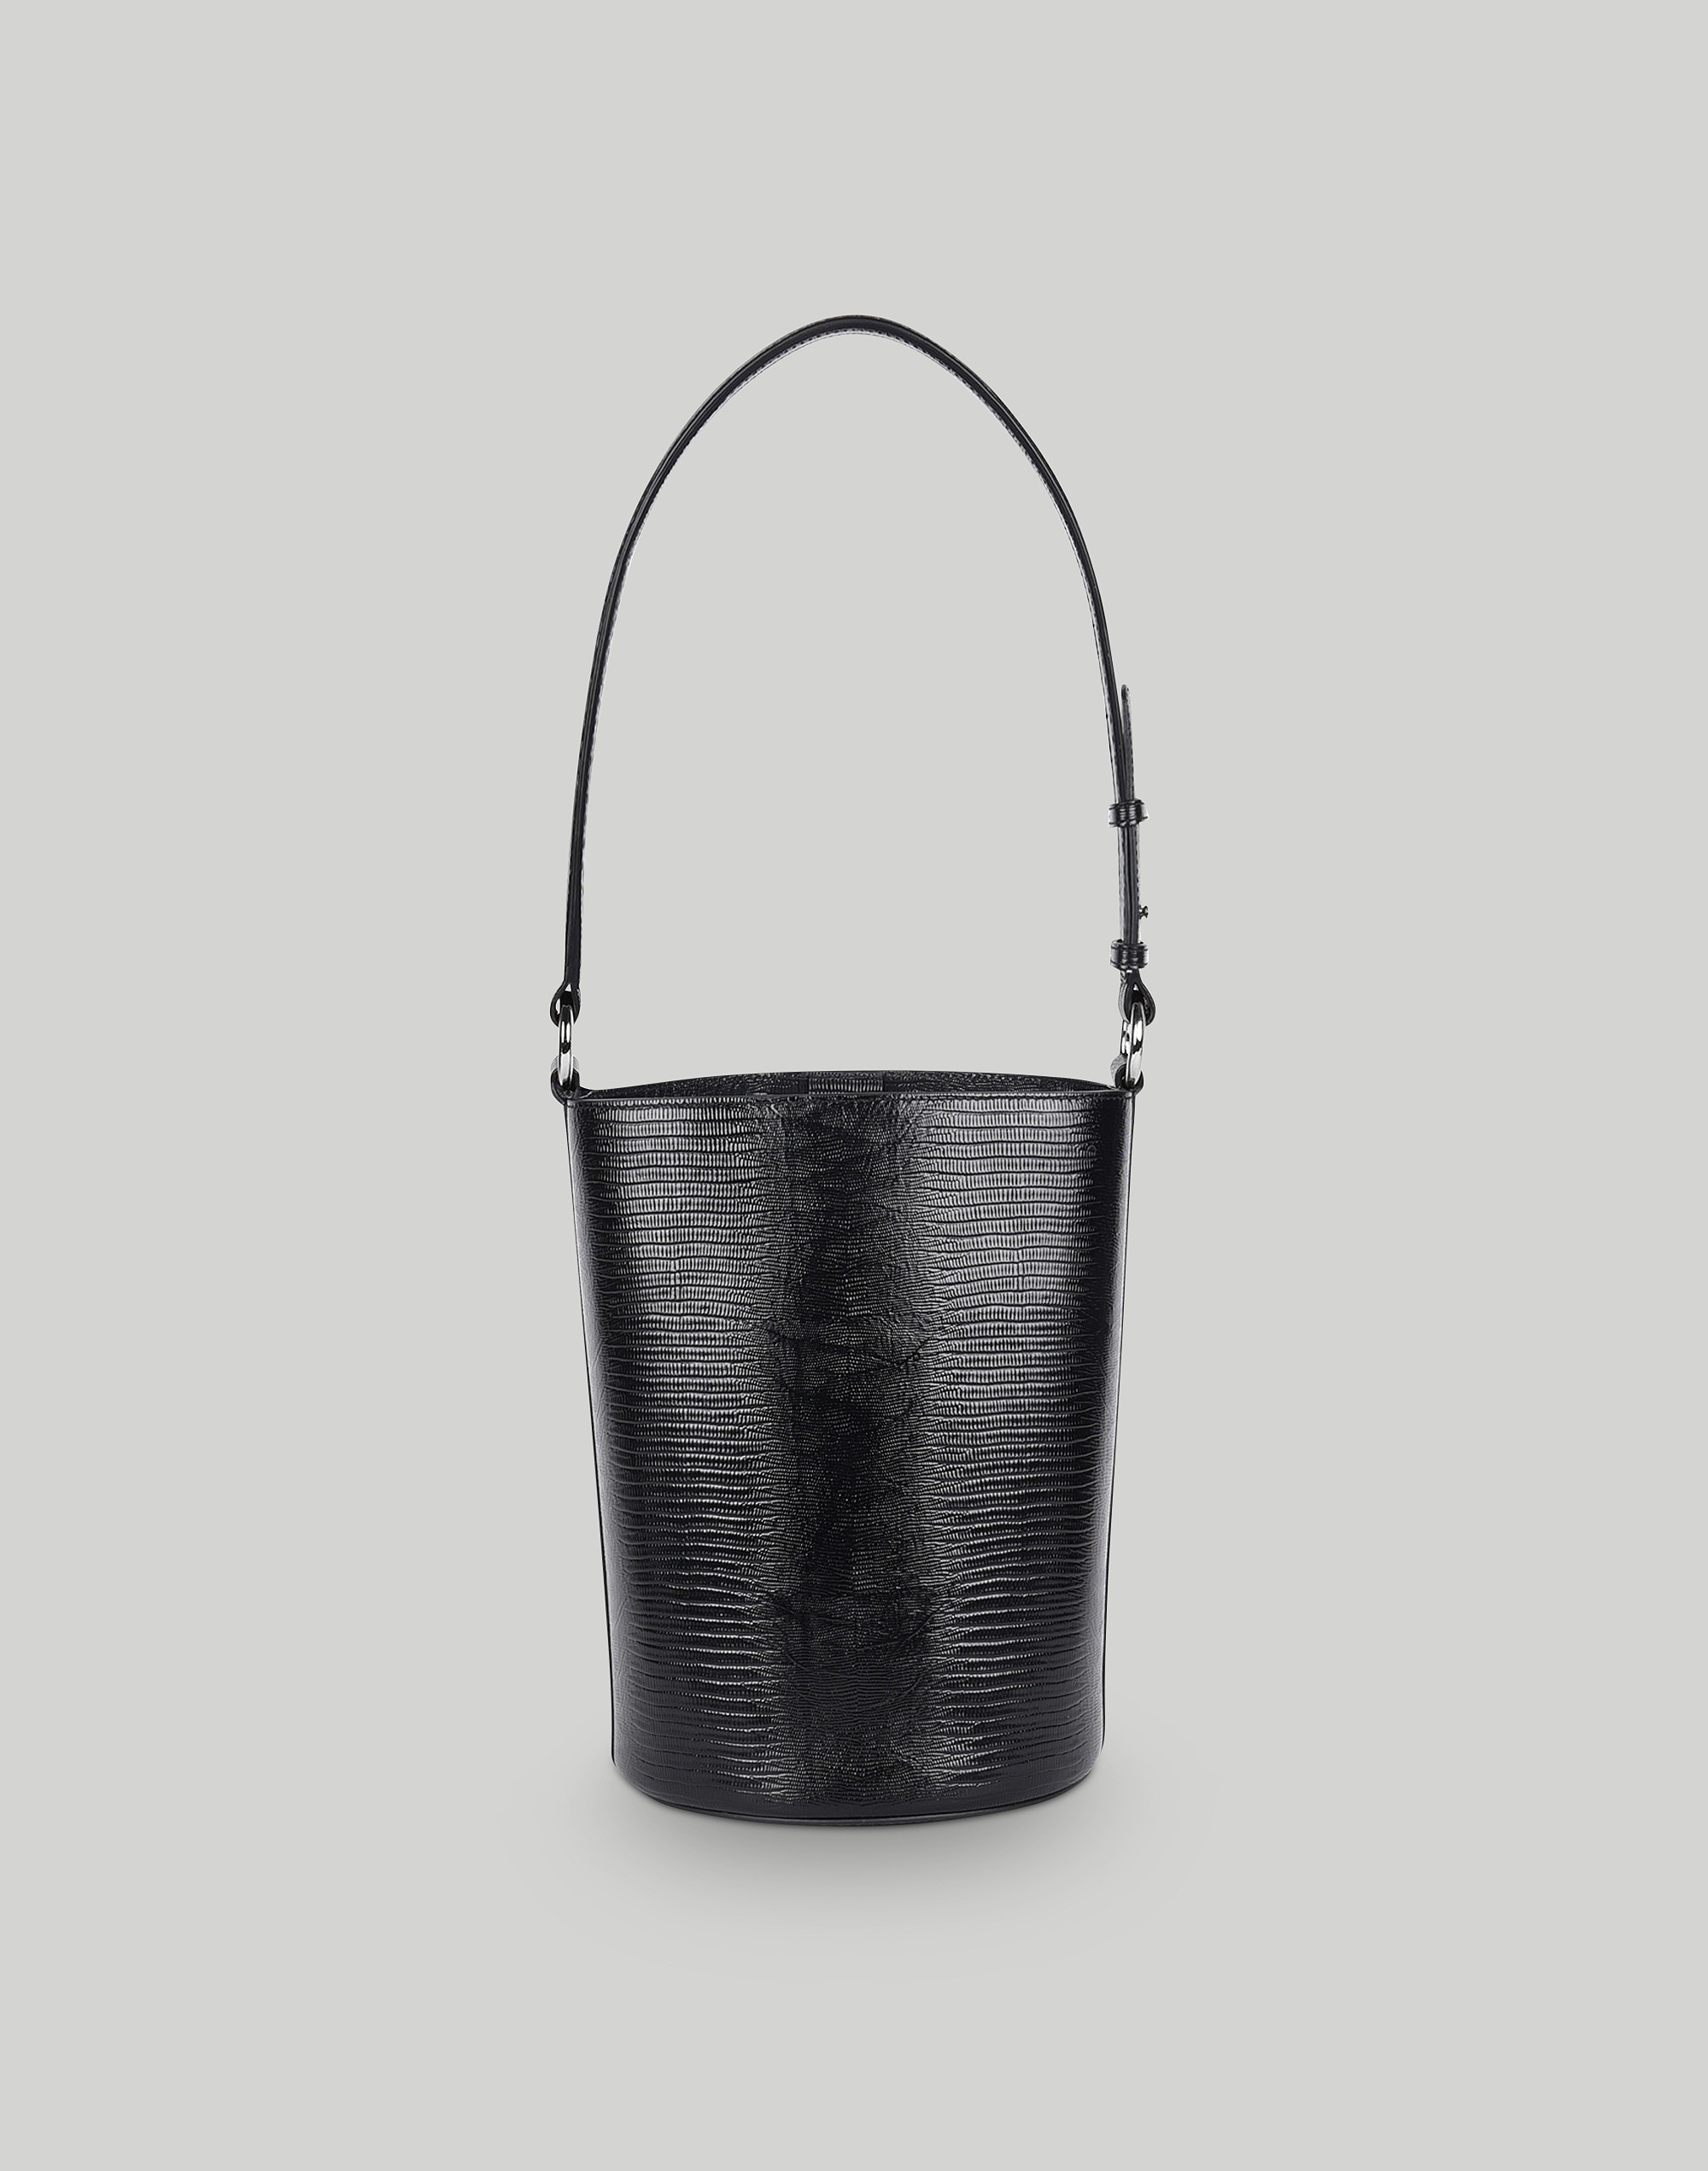 Hyer Goods Luxe Convertible Bucket Bag